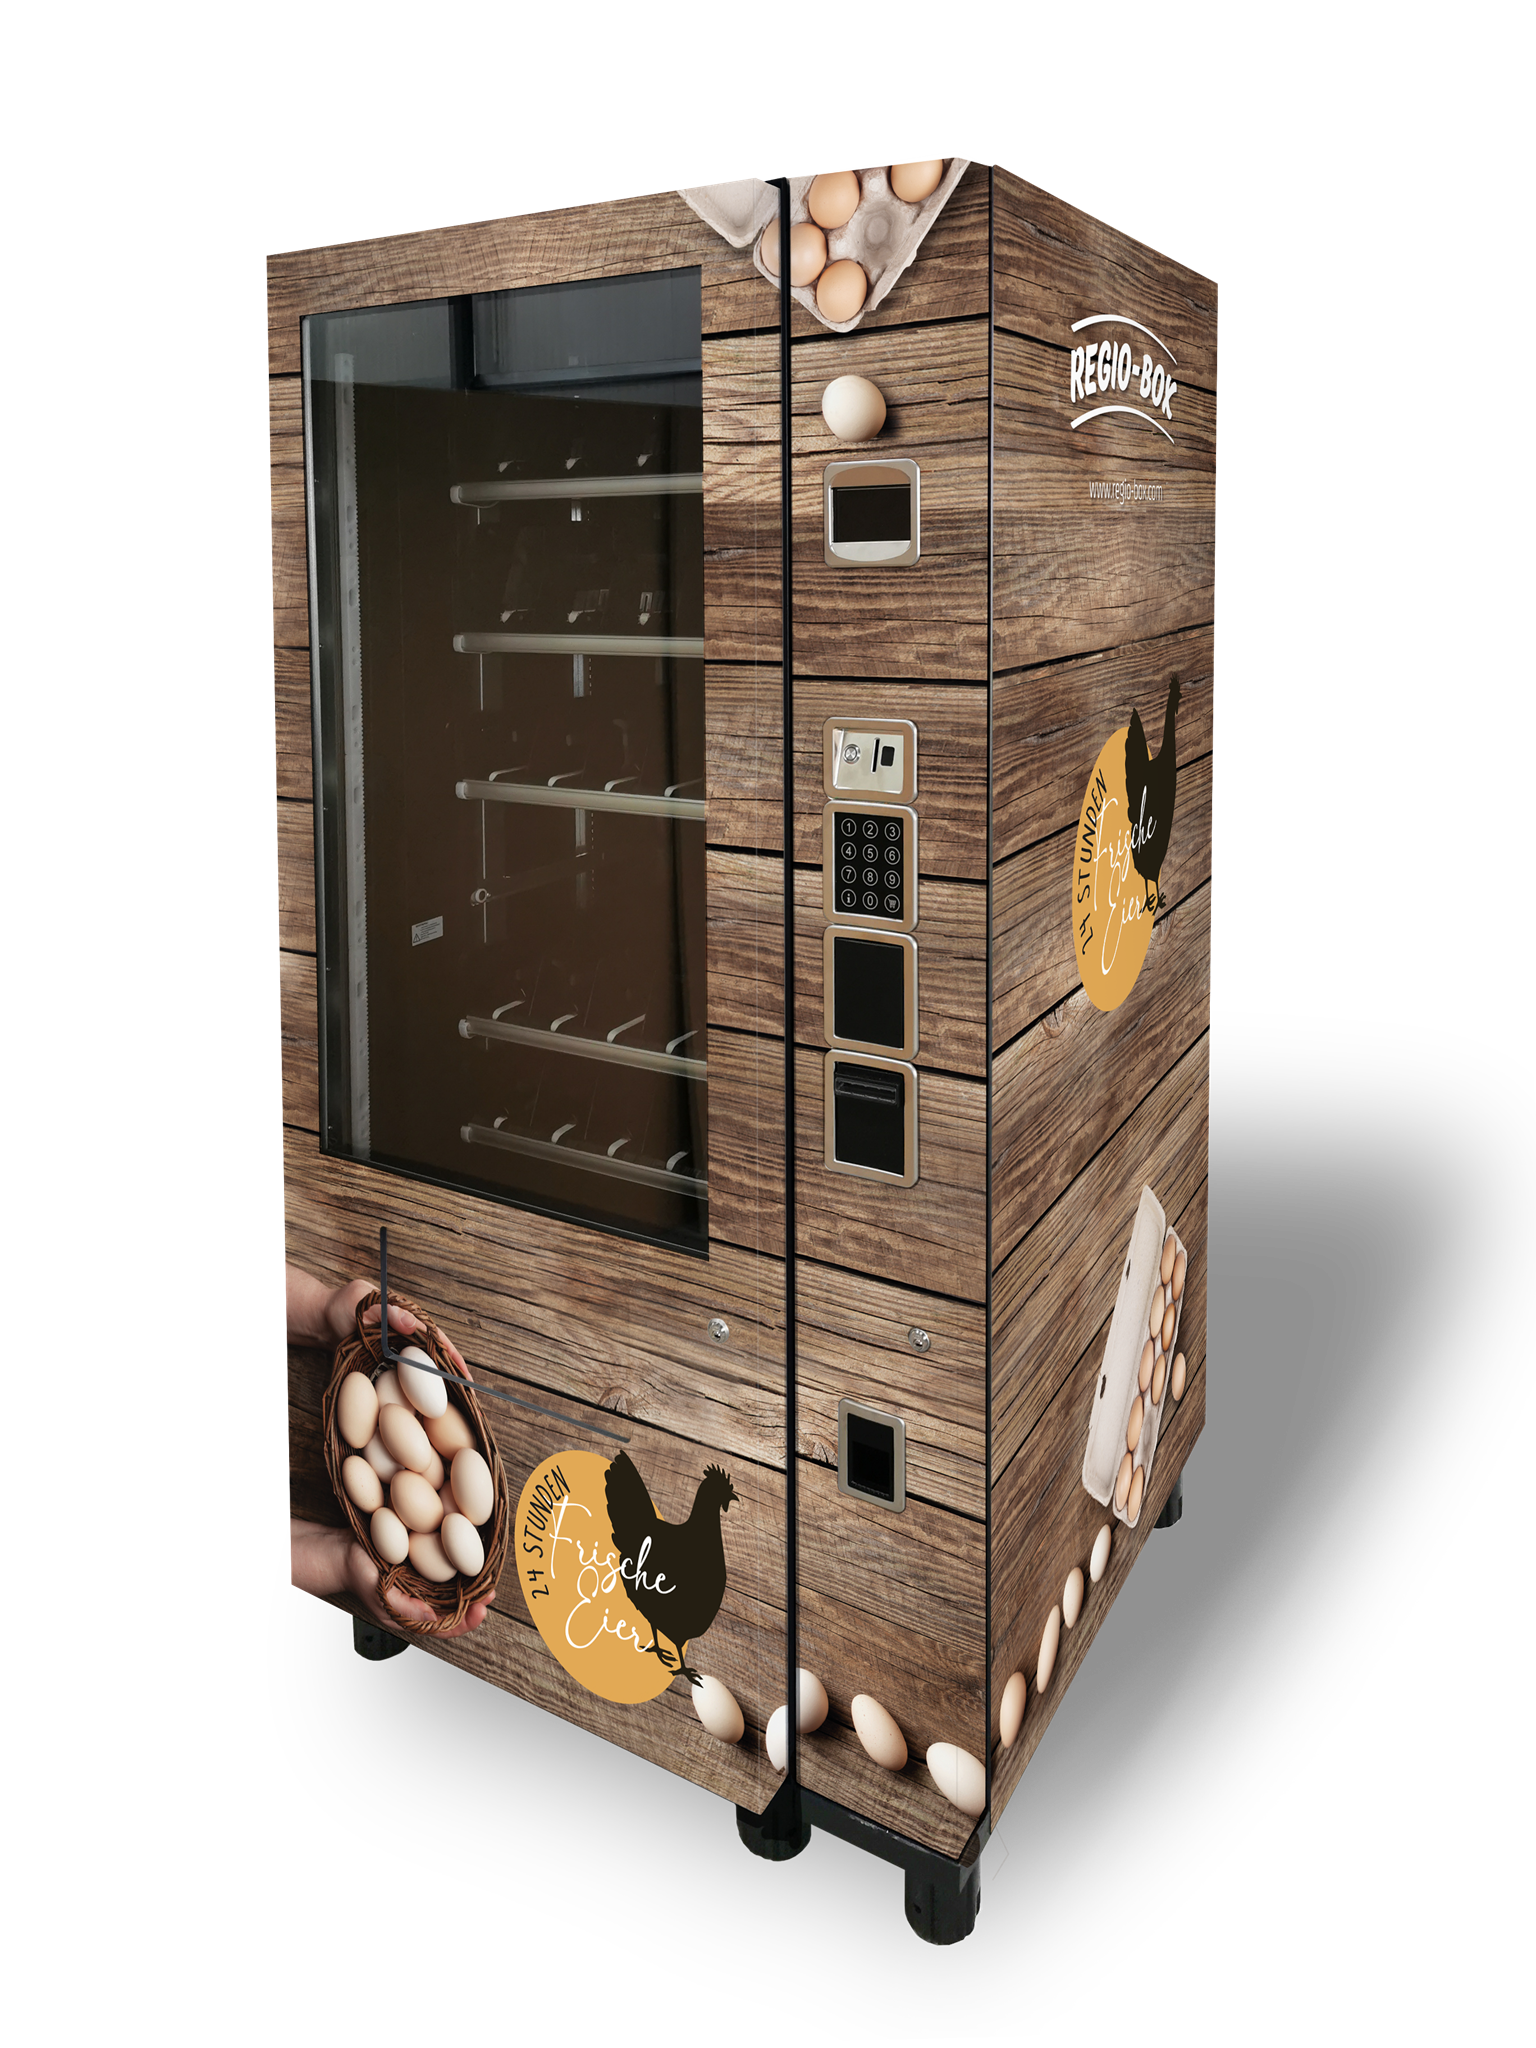 Regio-Box Grillfleisch-Automat